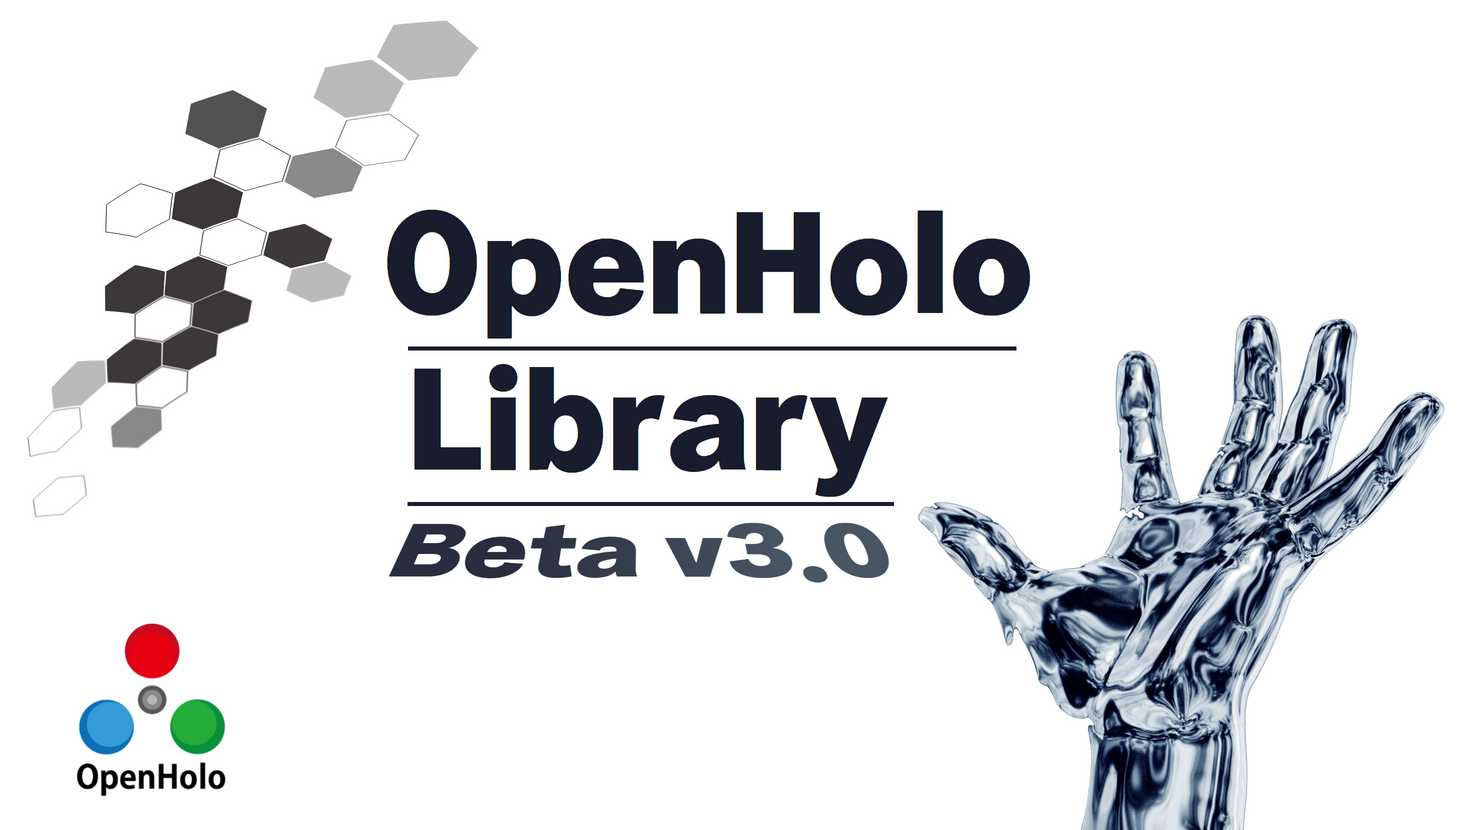 OPENHOLO Library beta v3.0